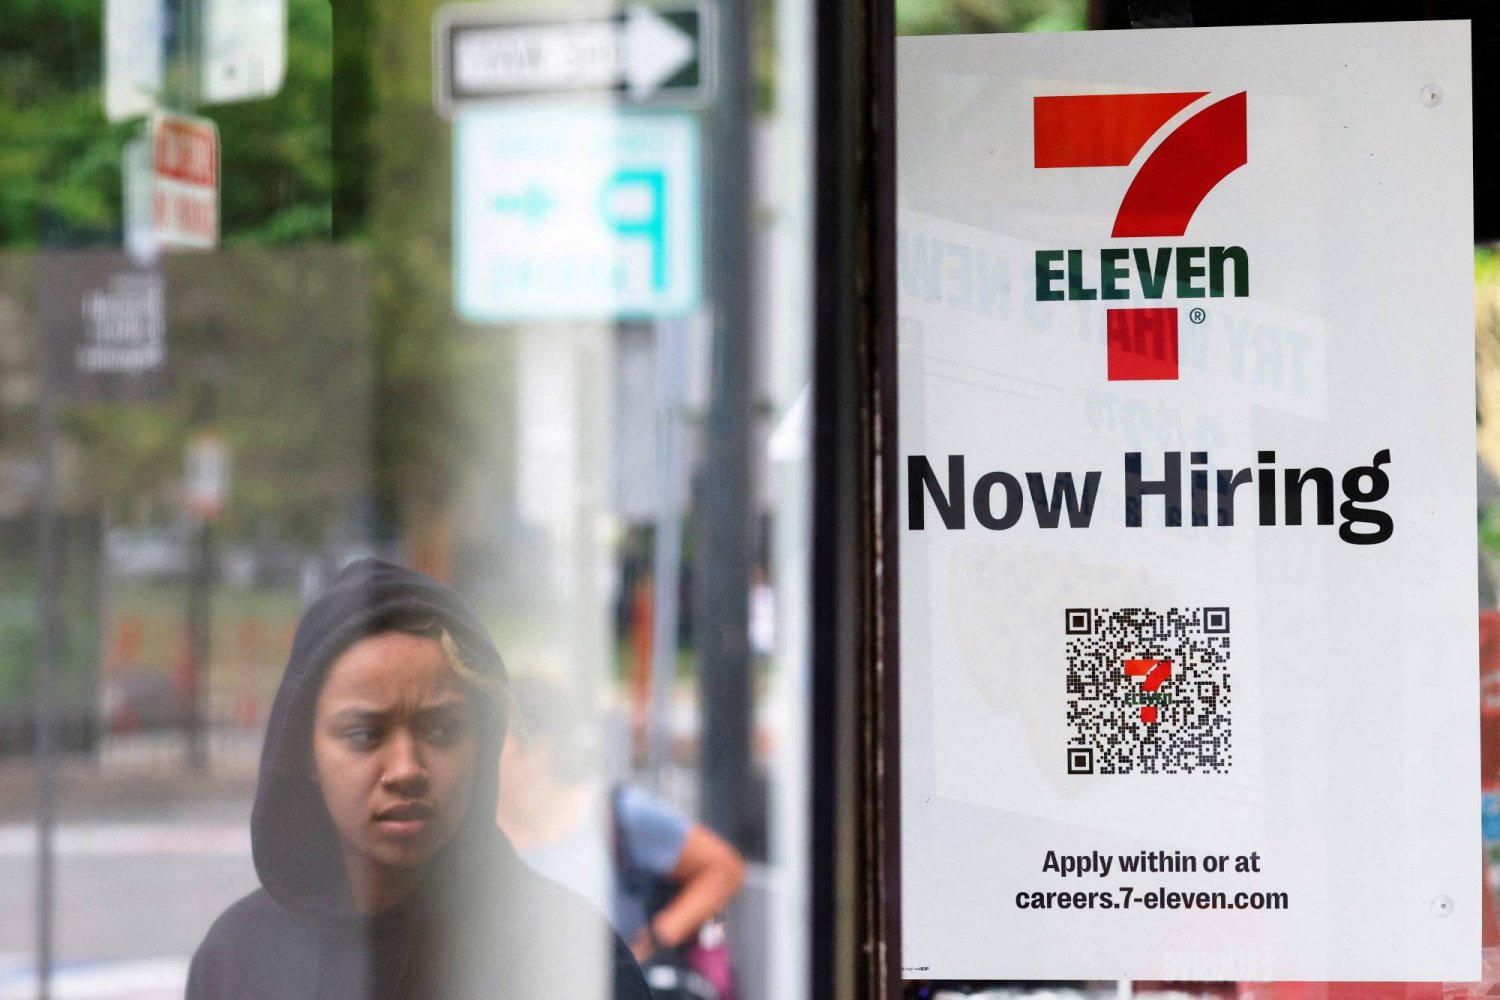 لافتة على نافذة متجر «إيلفن-7» كتب عليها «نوظف الآن» في كمبردج بماساتشوستس في الولايات المتحدة (رويترز)